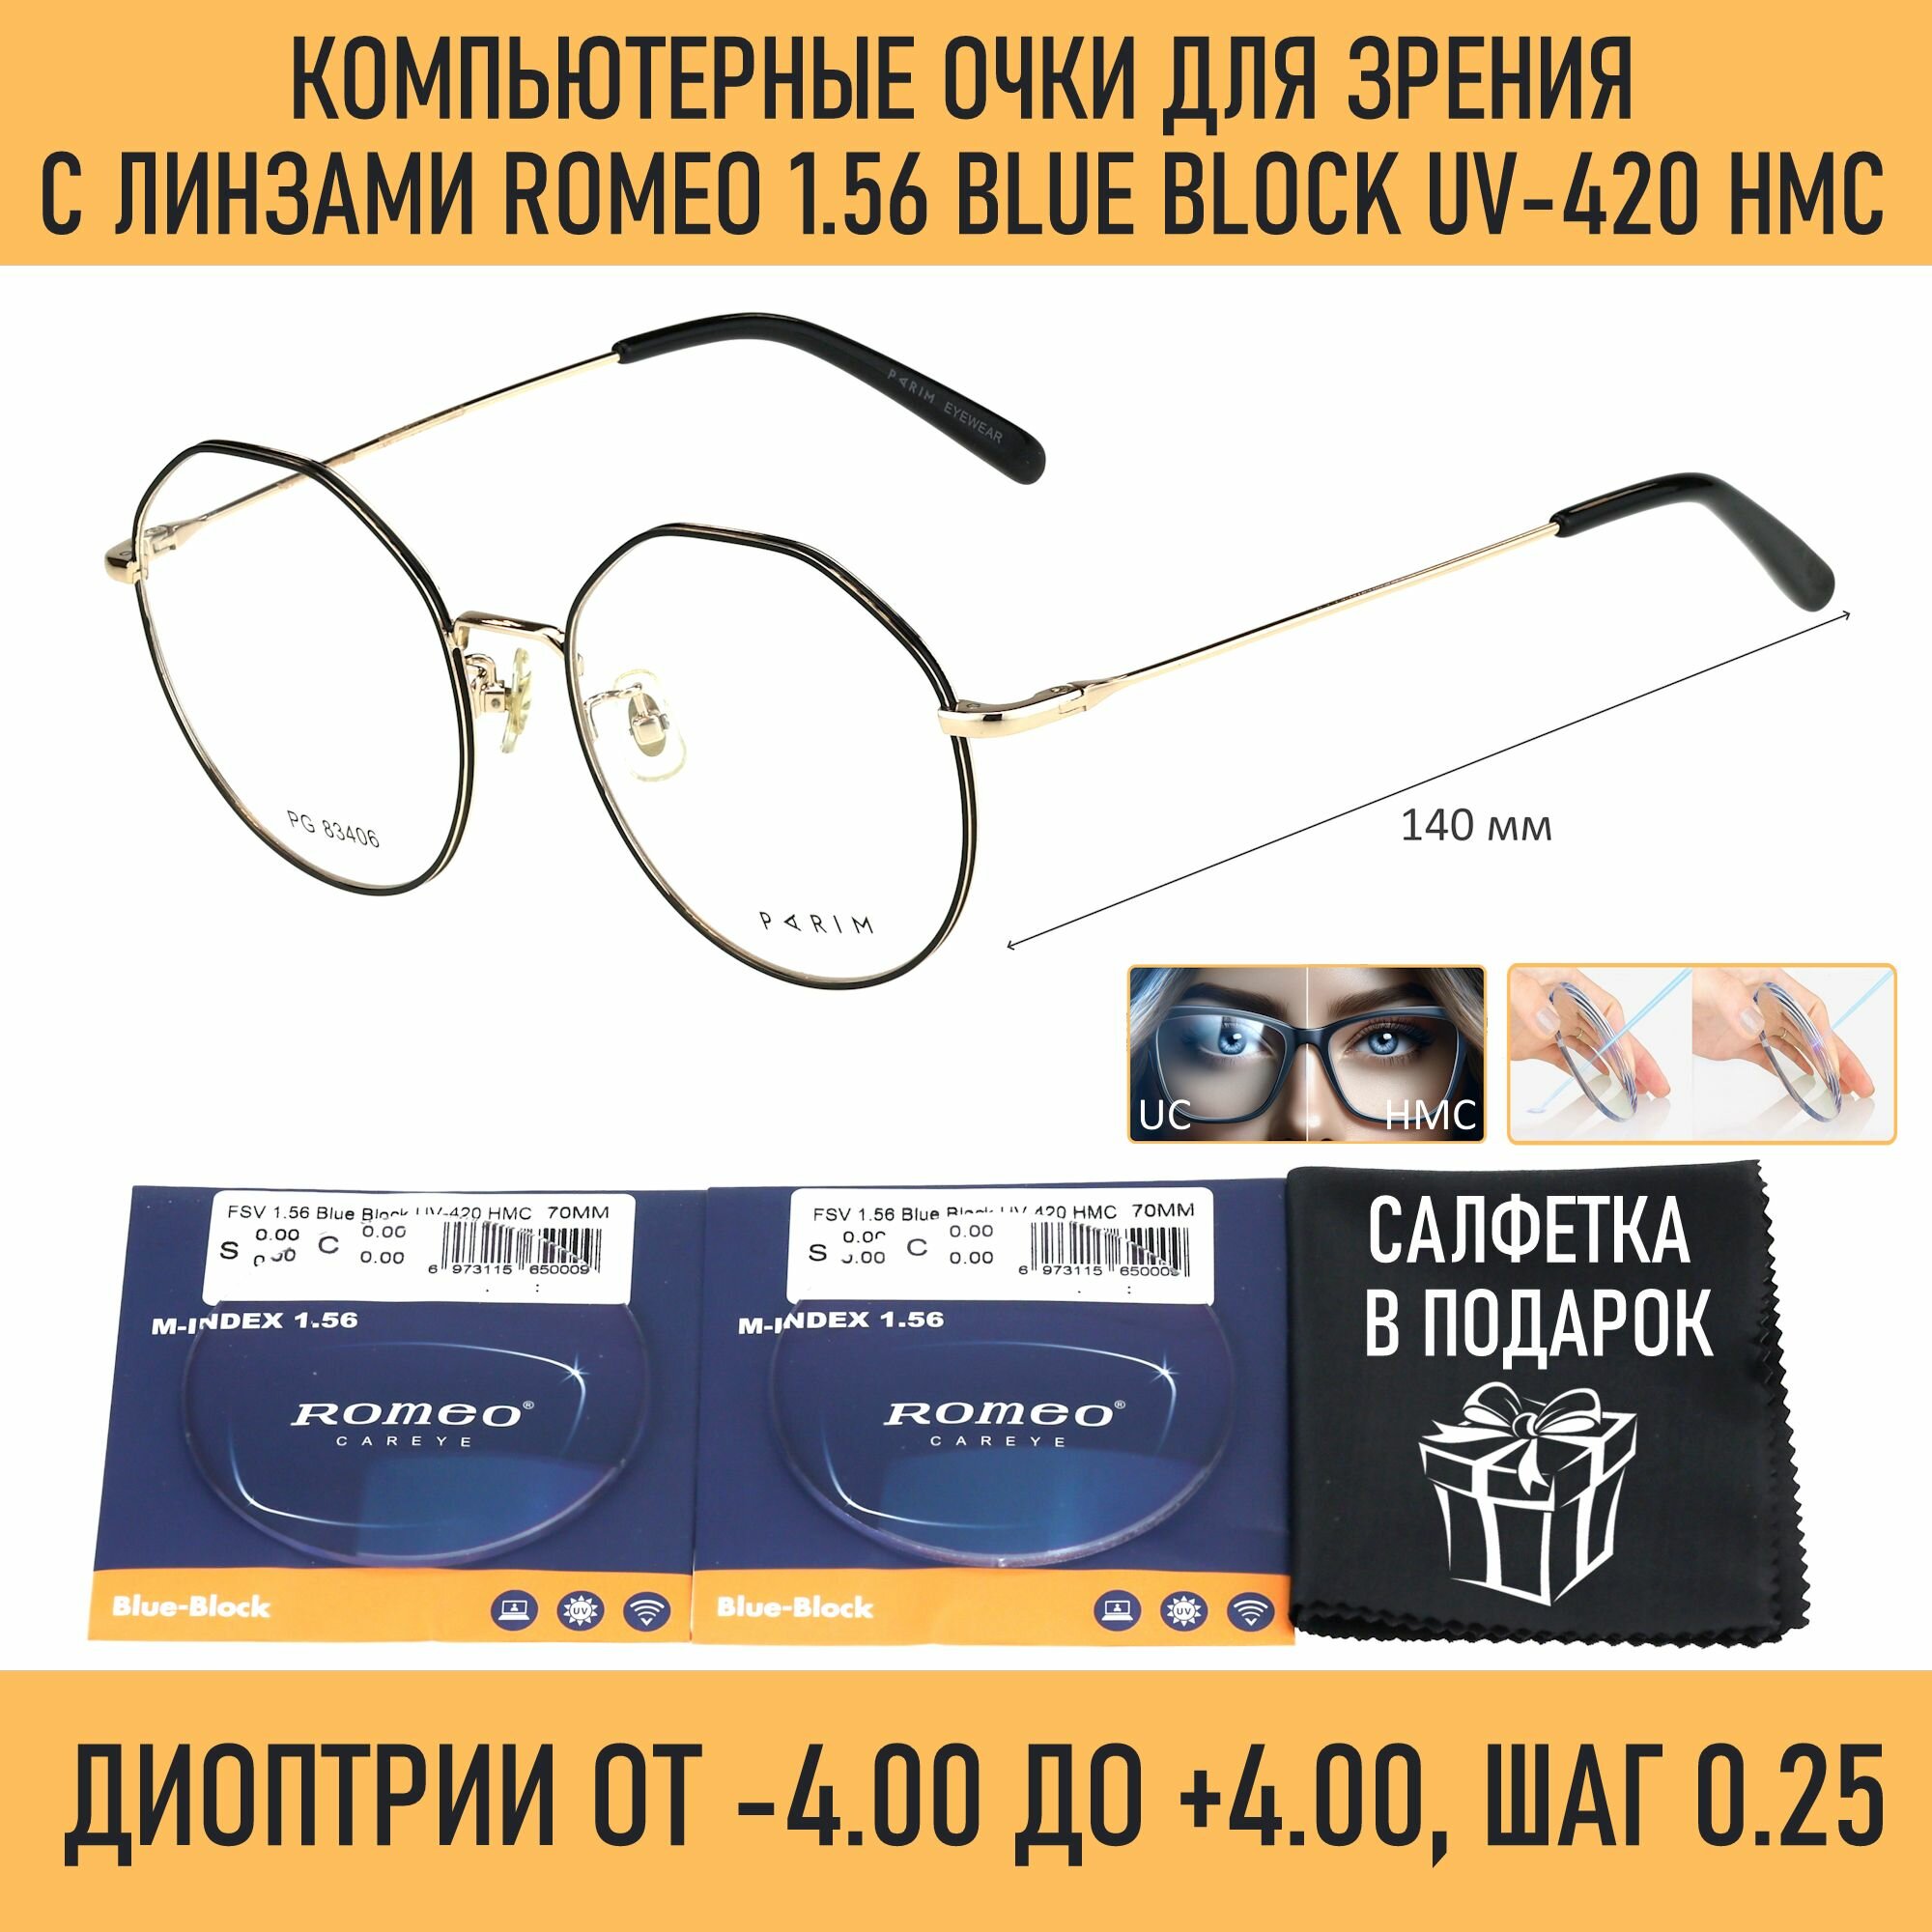 Компьютерные очки для чтения PARIM мод. 83406 Цвет B1 с линзами ROMEO 1.56 Blue Block +1.75 РЦ 58-60